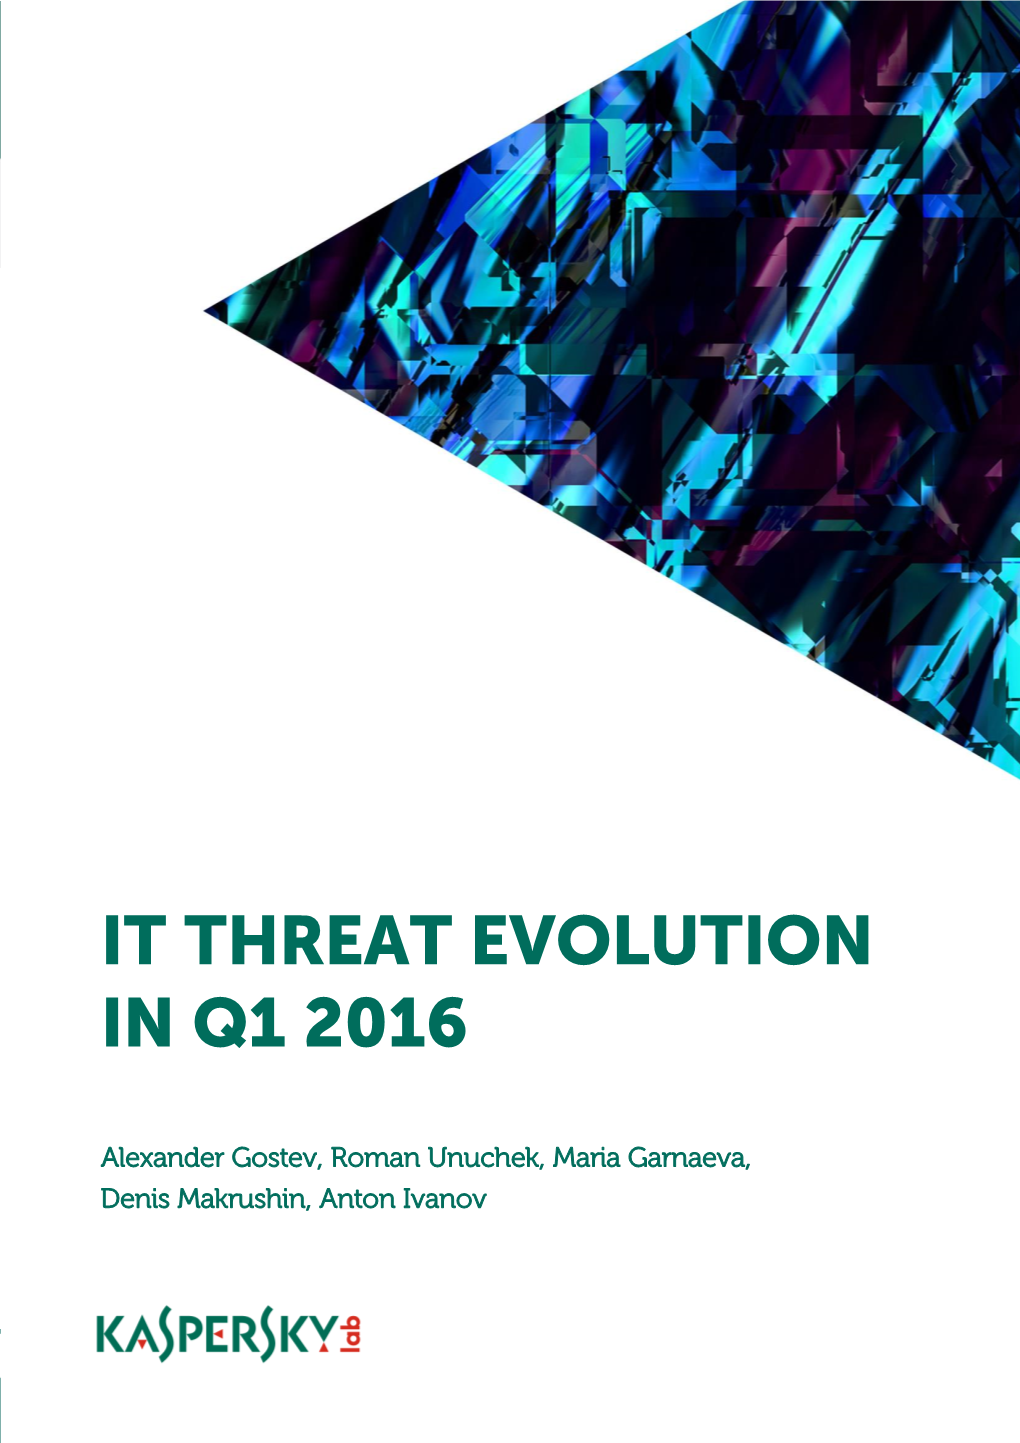 It Threat Evolution in Q1 2016